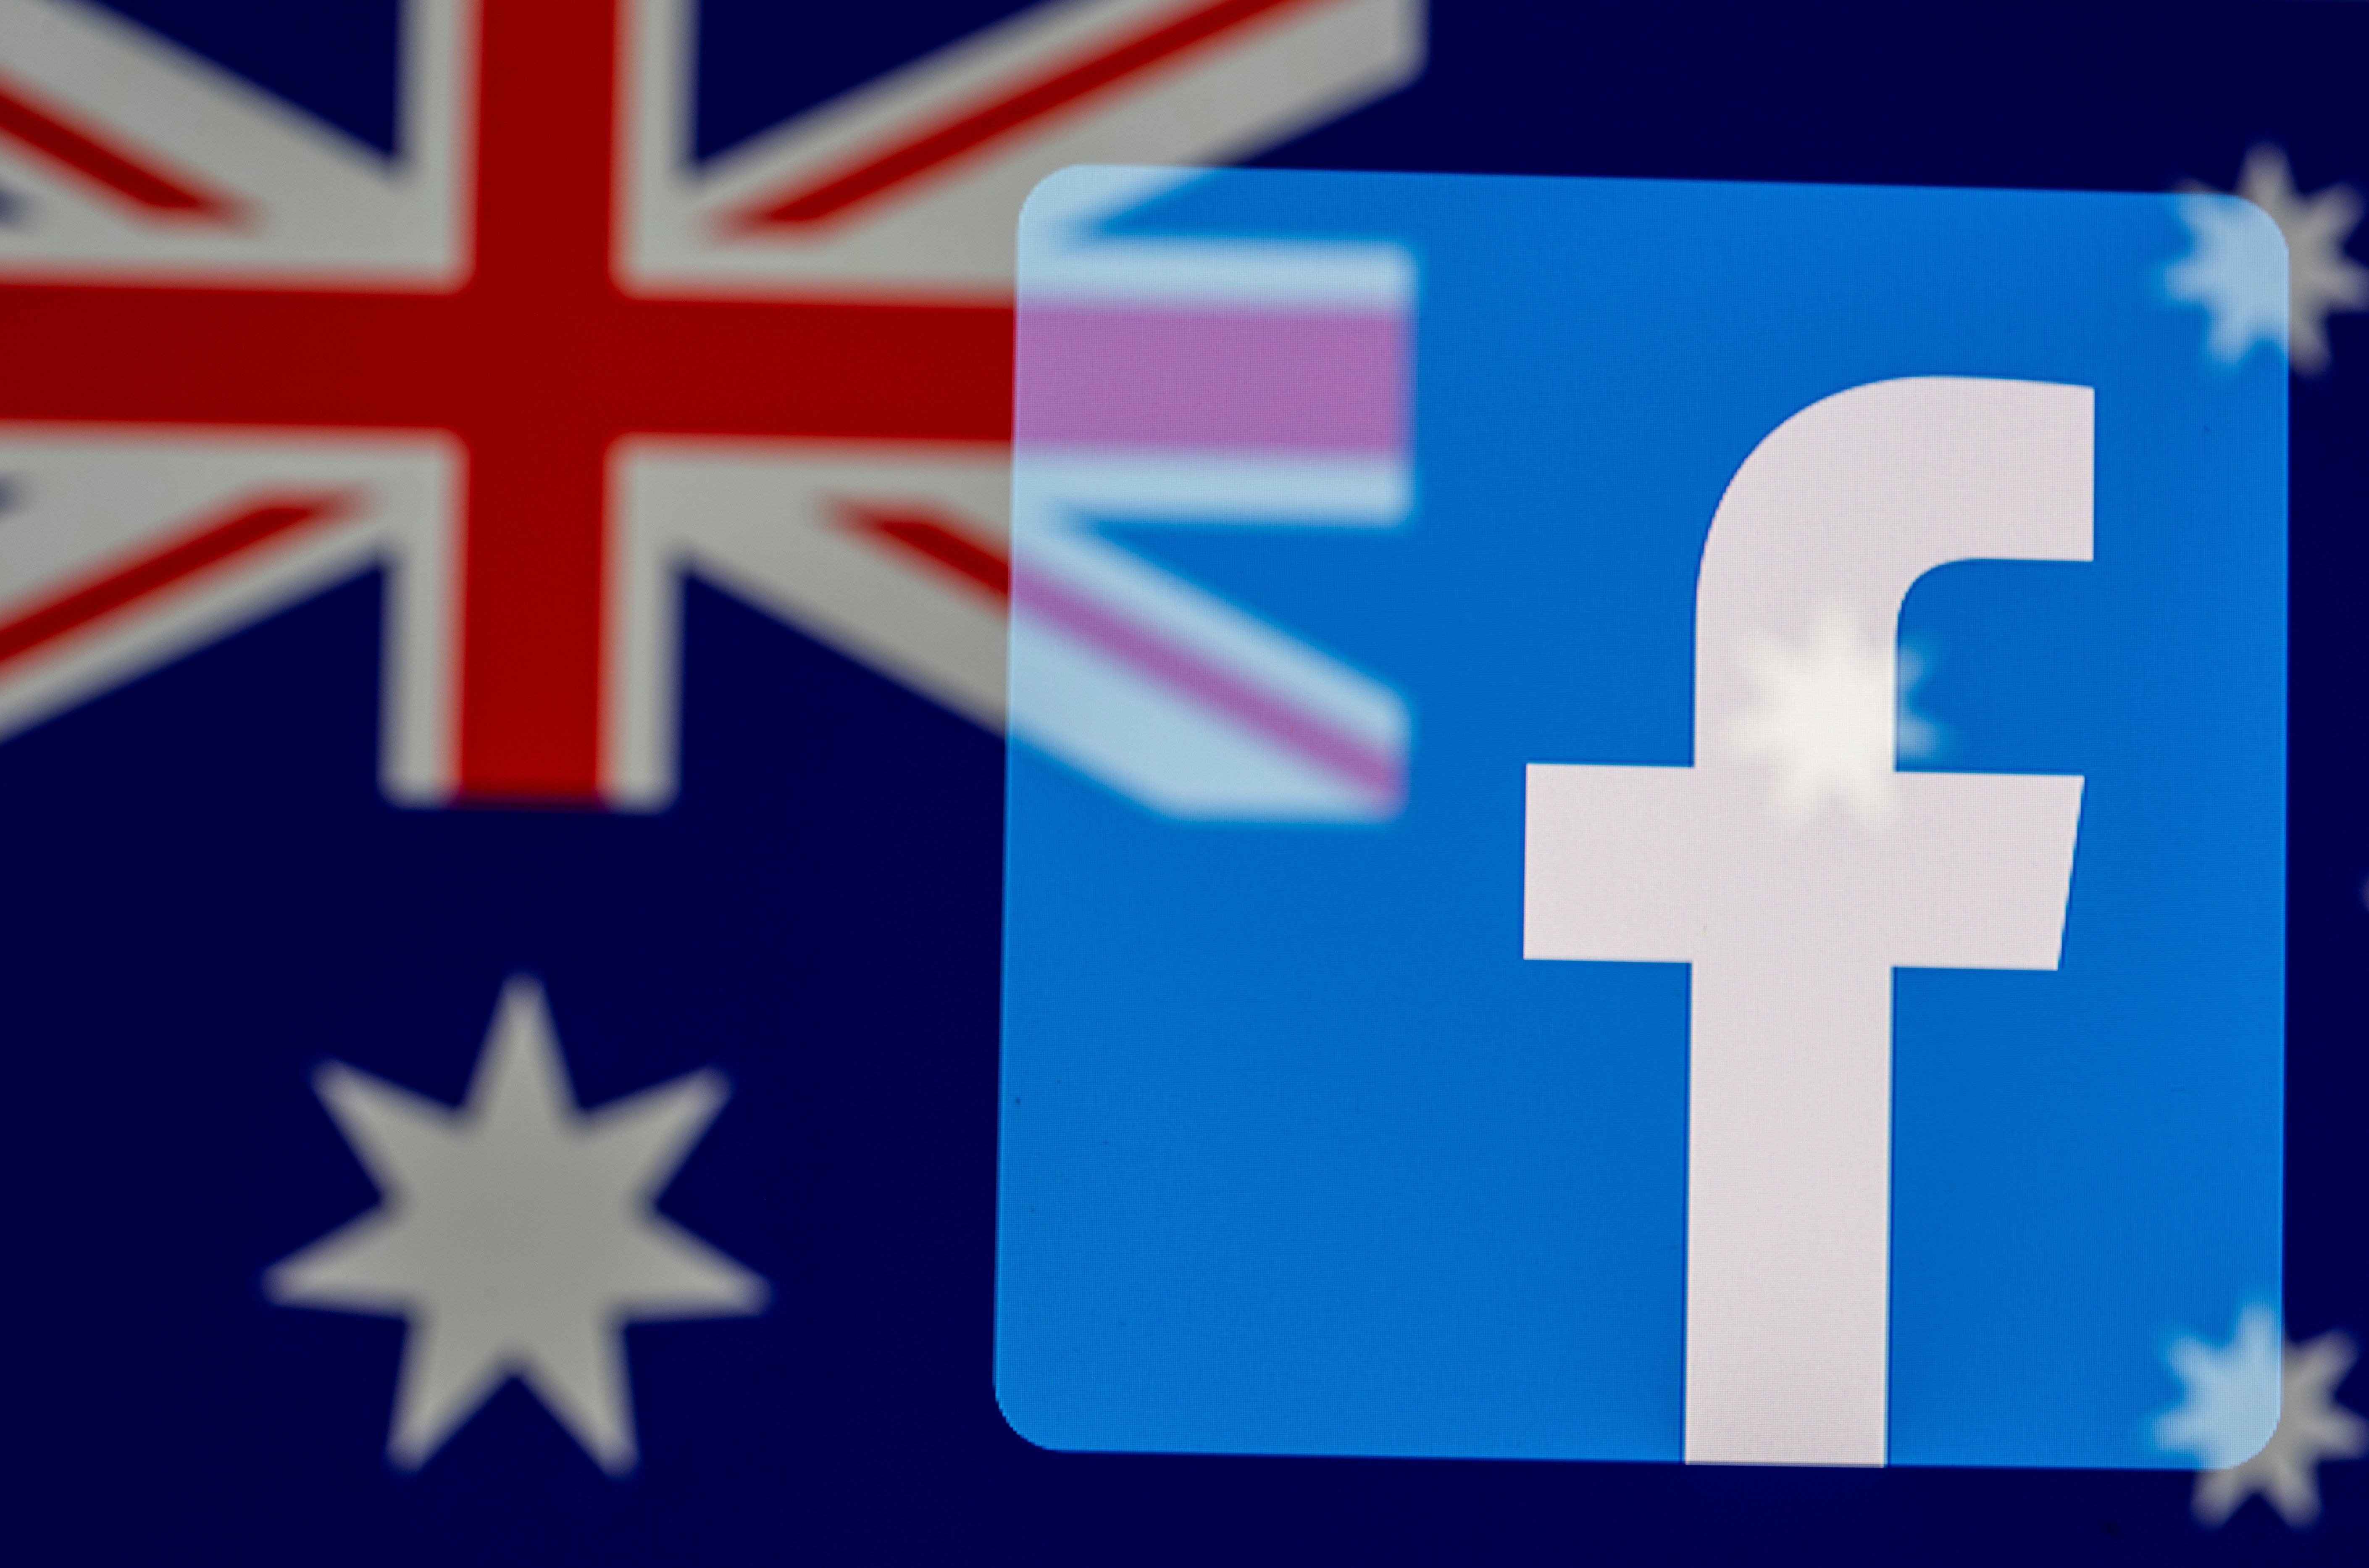 Australia won’t change planned content laws despite Facebook block – lawmaker